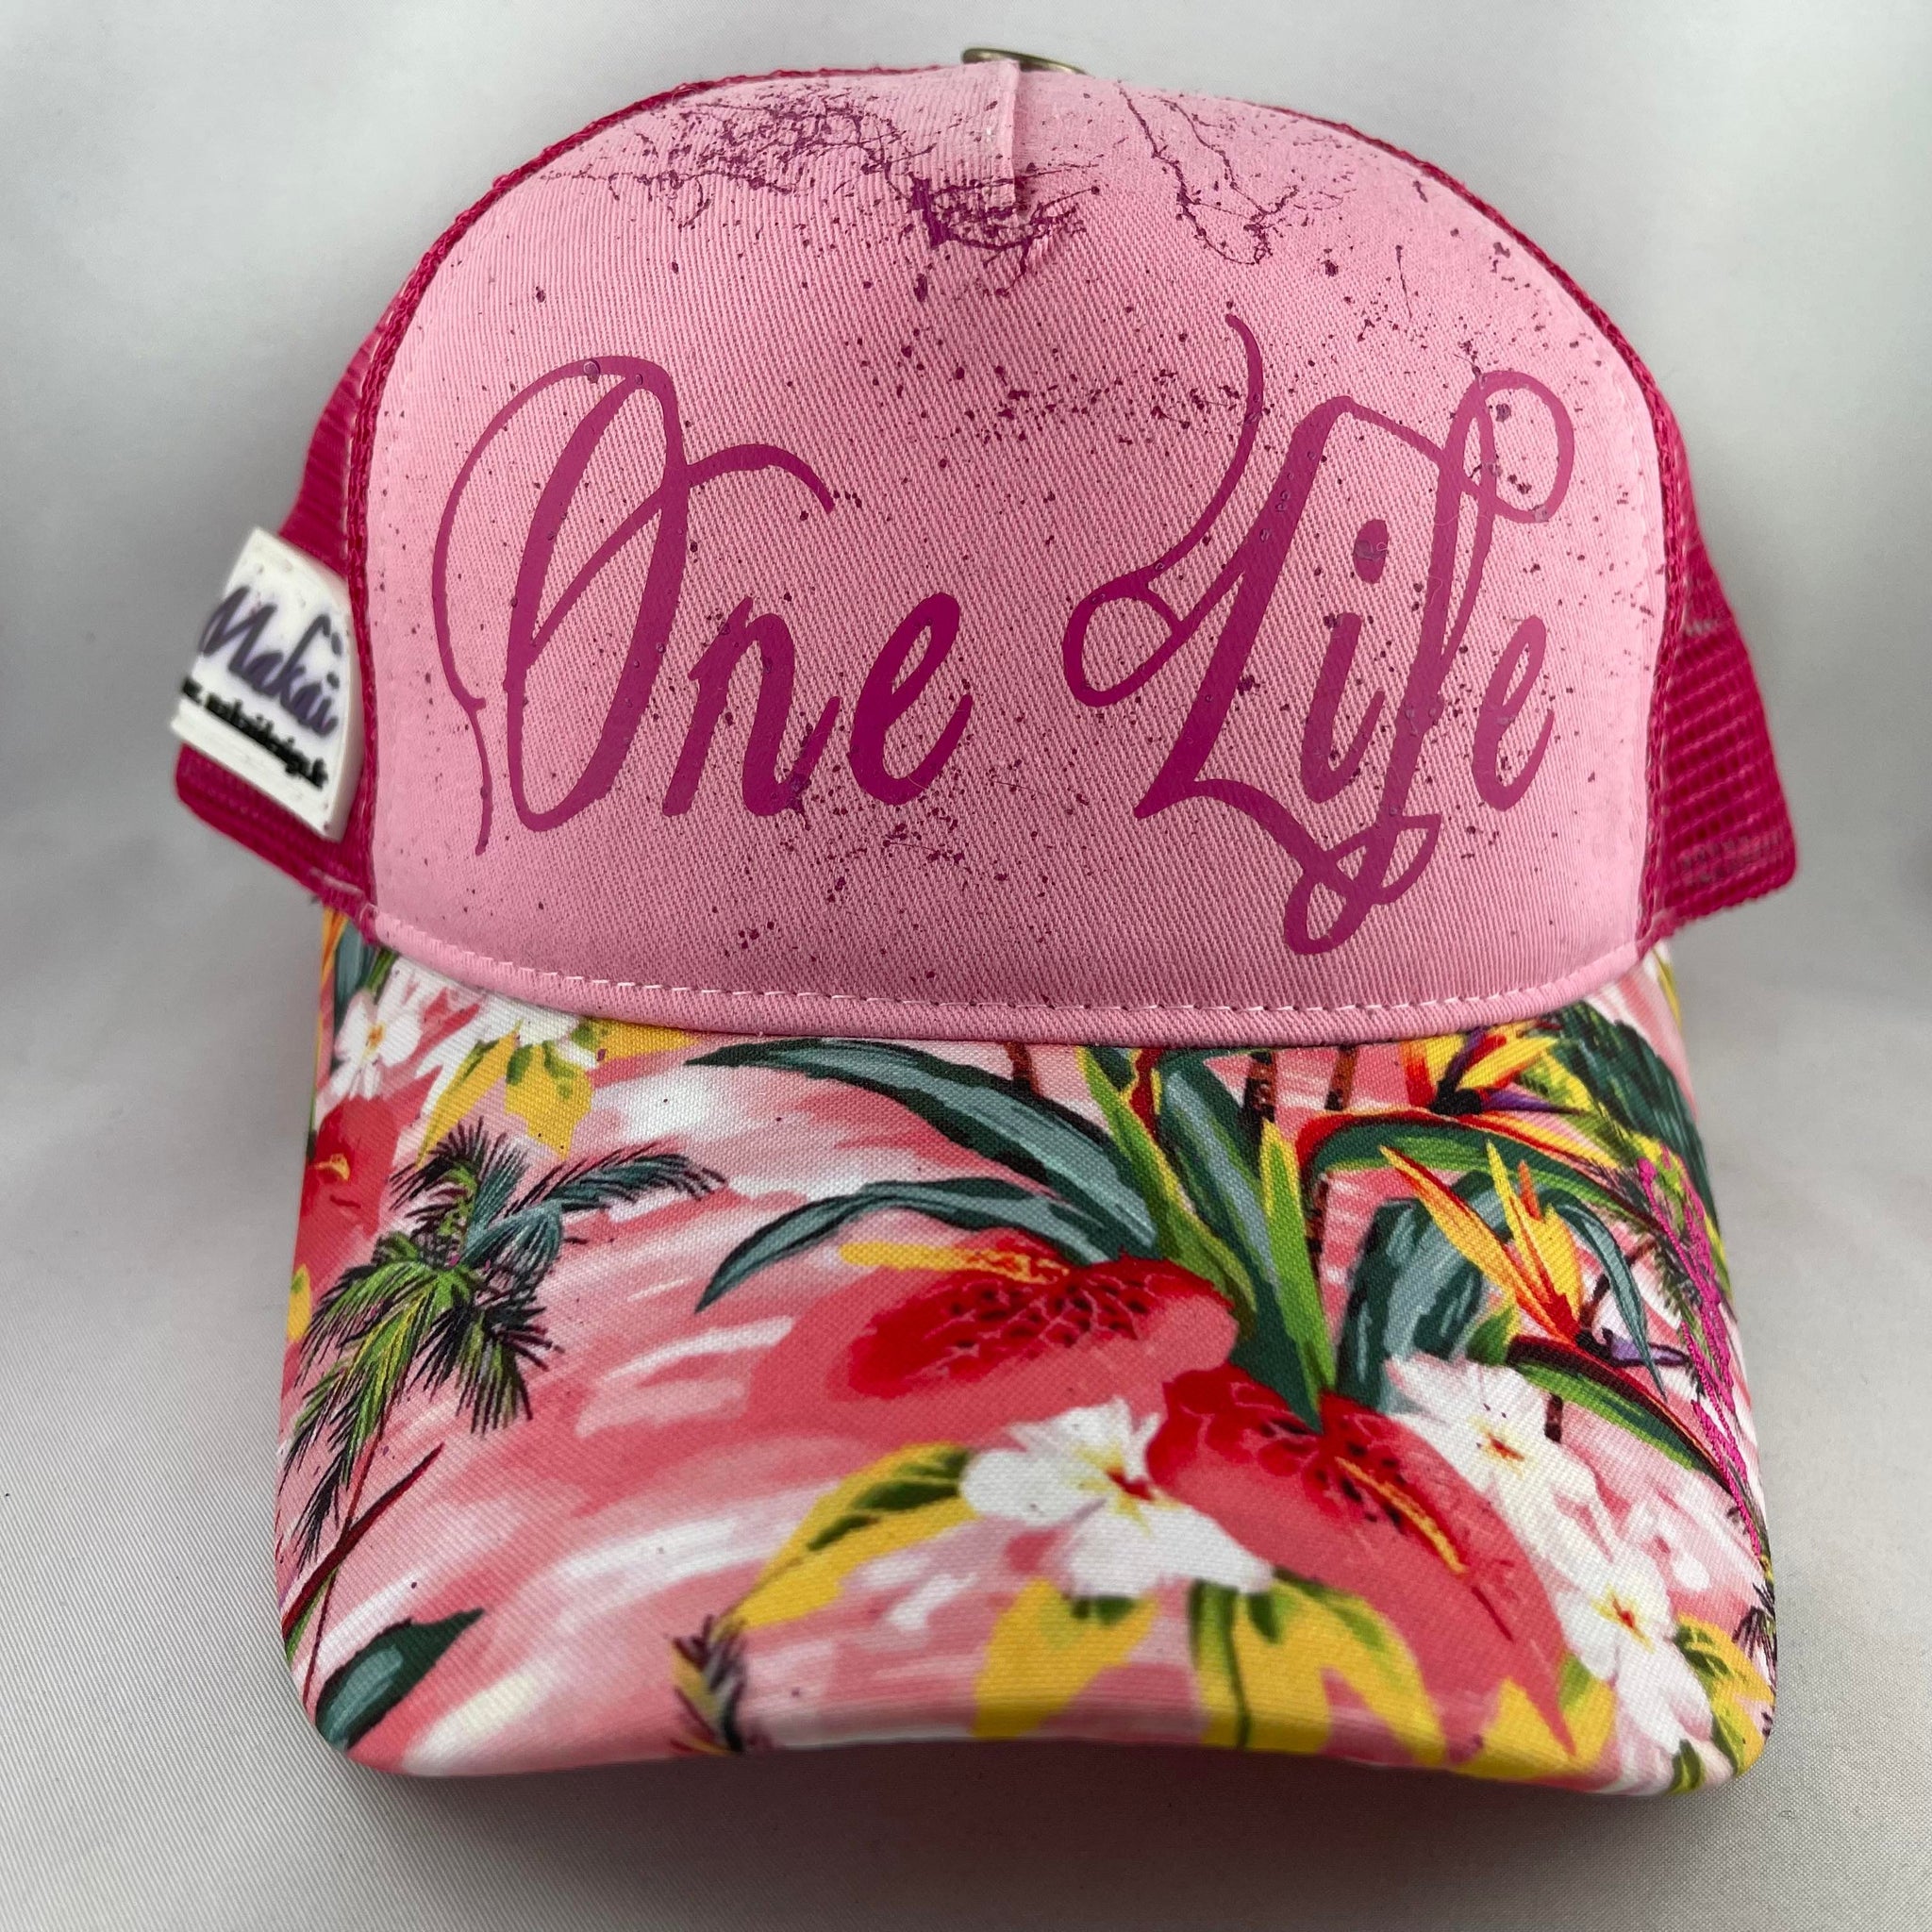 "Hawaï Pink" ONE LIFE x MAKAÏ